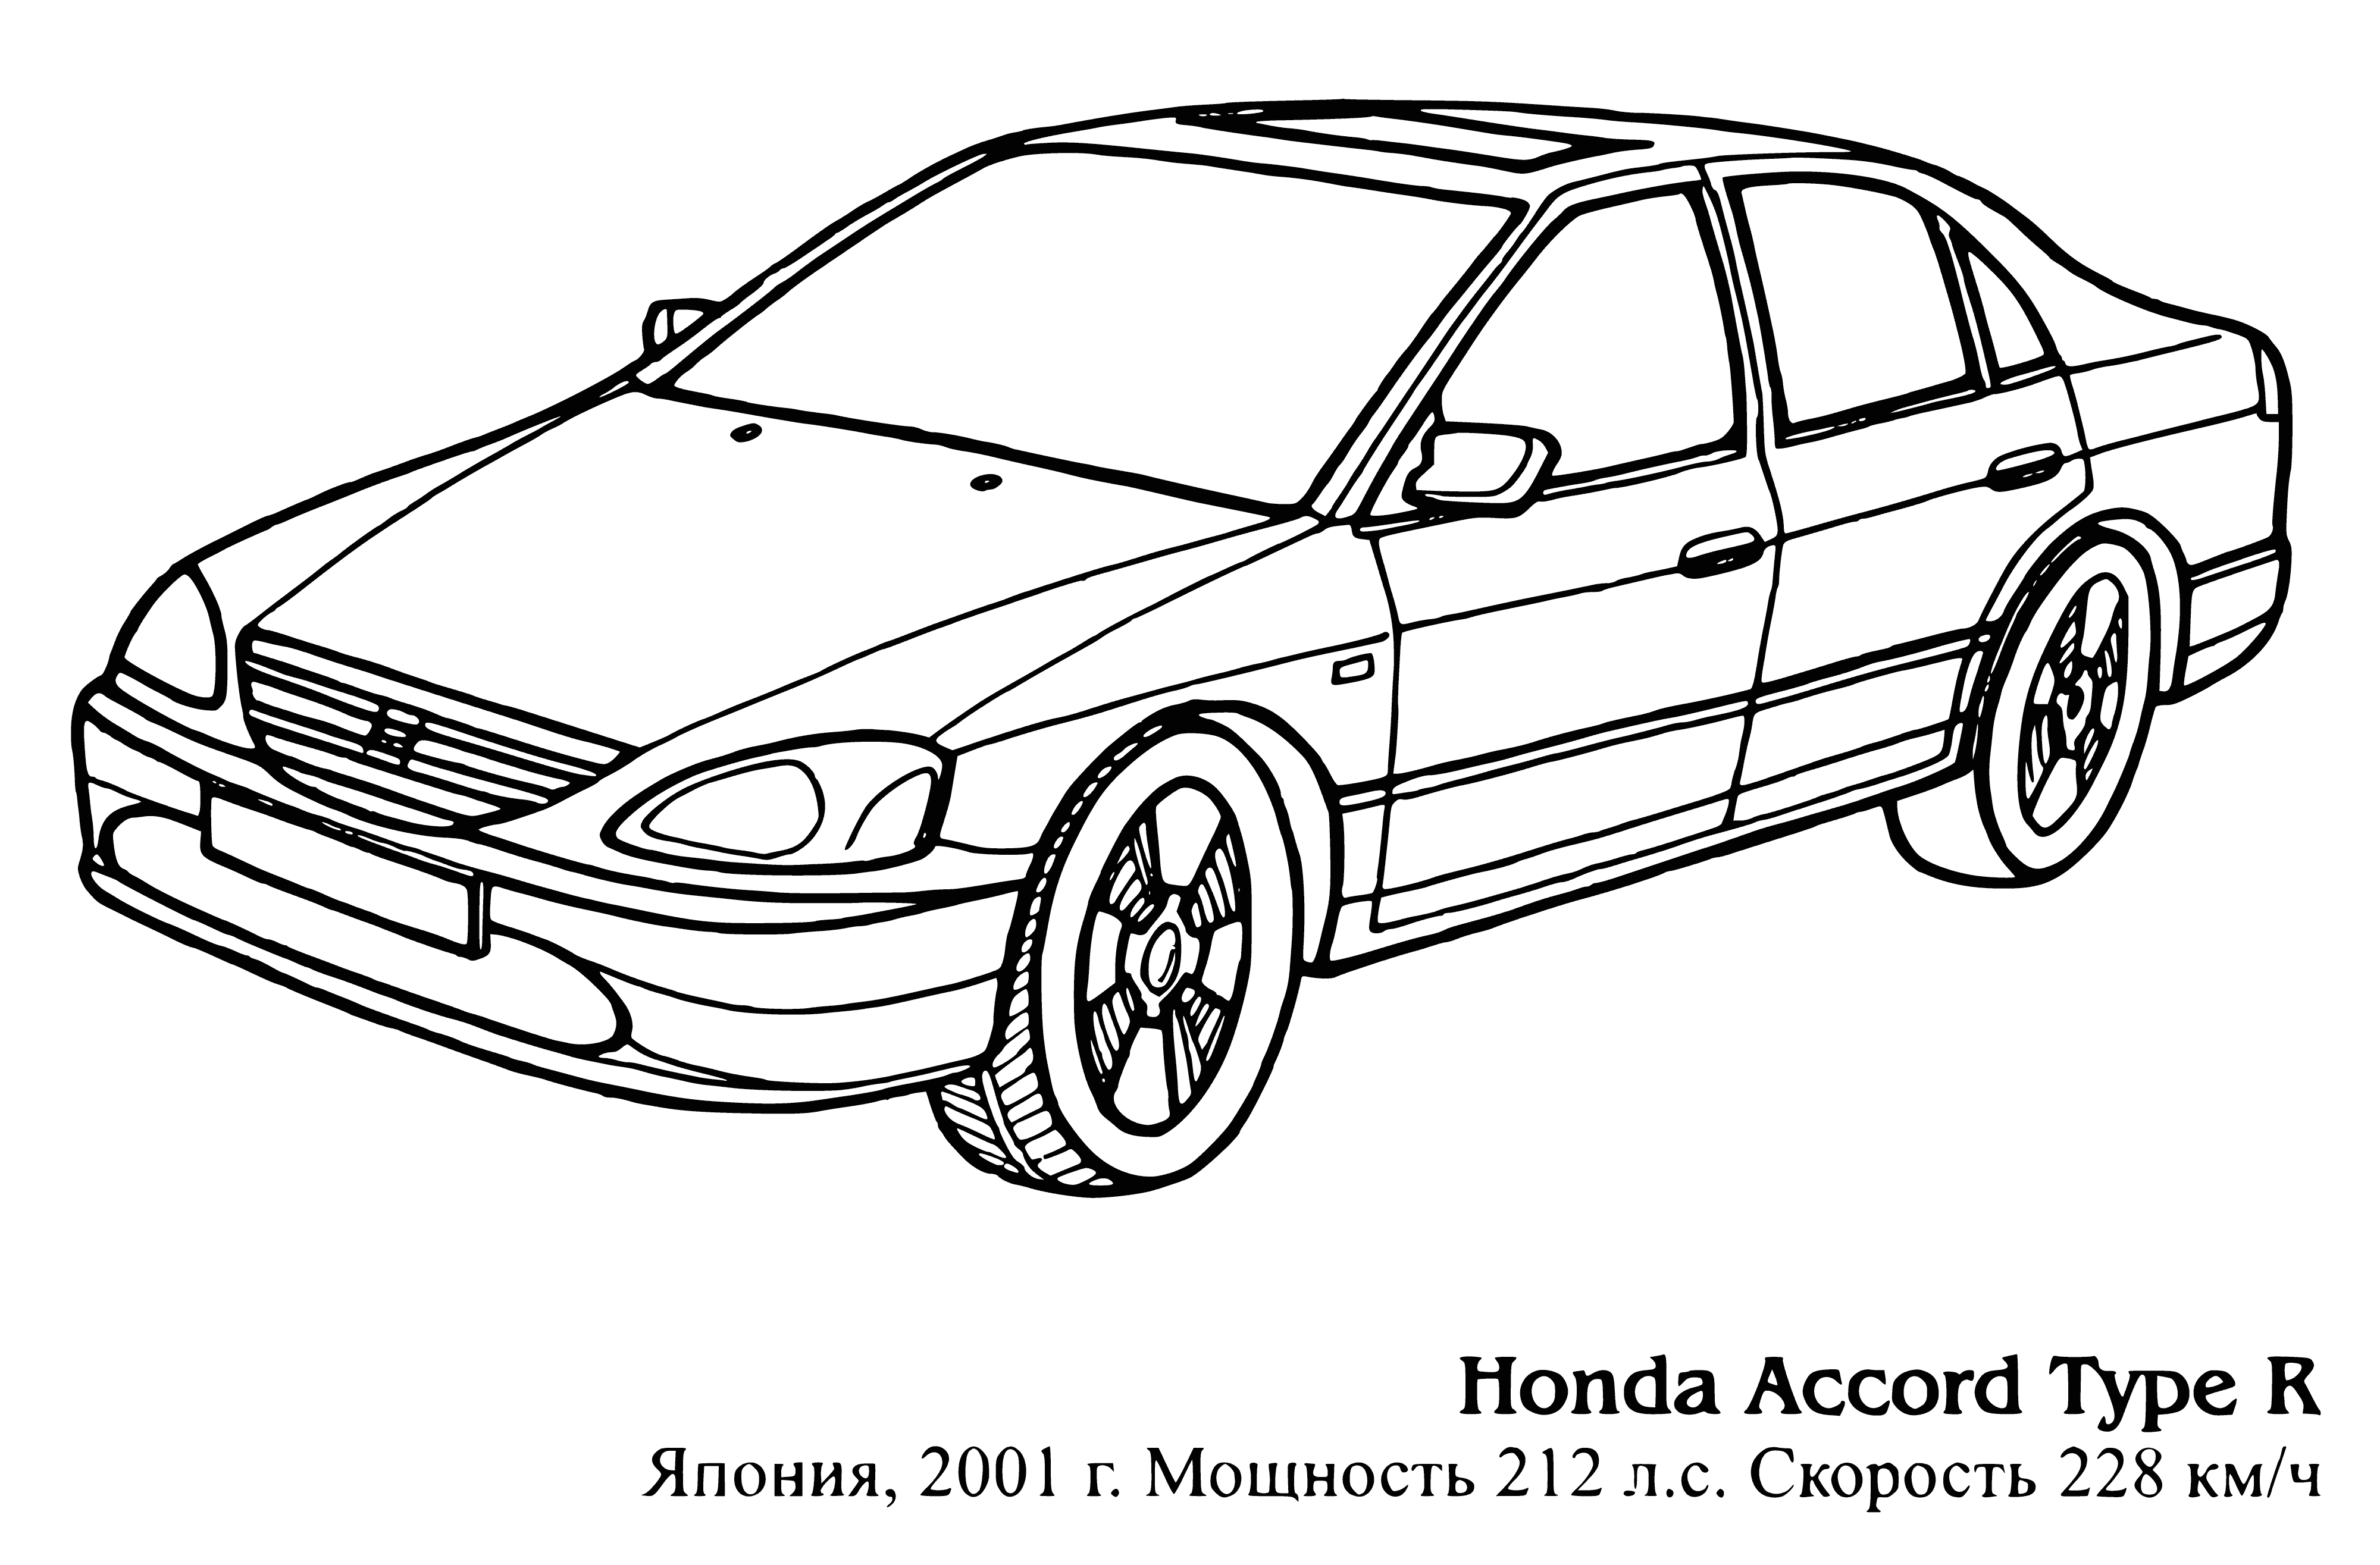 Honda Accord Tip R boyama sayfası